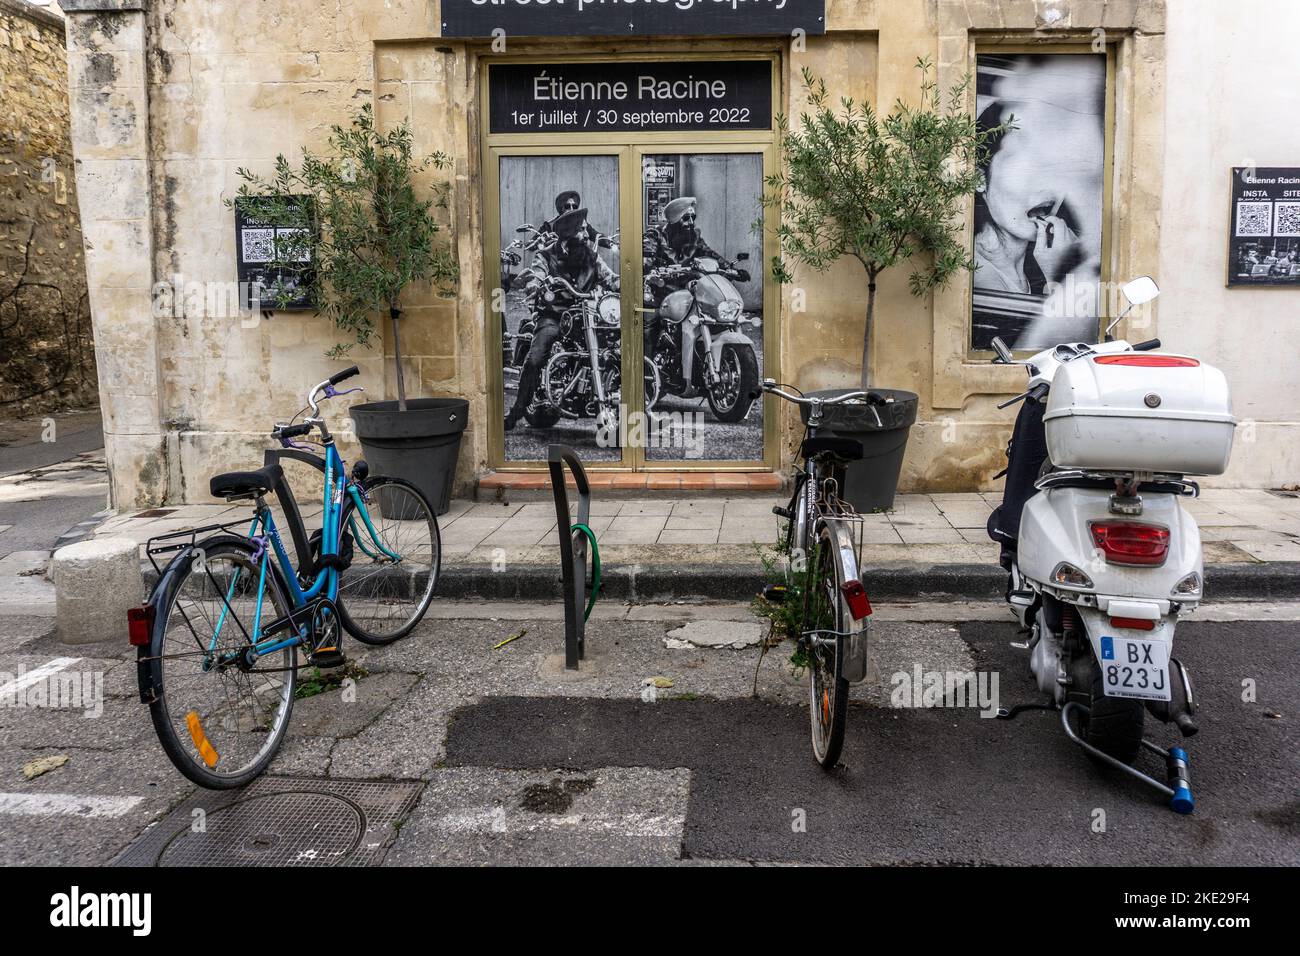 Zwei Fahrräder und ein Roller parkten vor einem Plakat einer Ausstellung von Straßenfotografie von Etienne Racine in Arles, Frankreich. Stockfoto